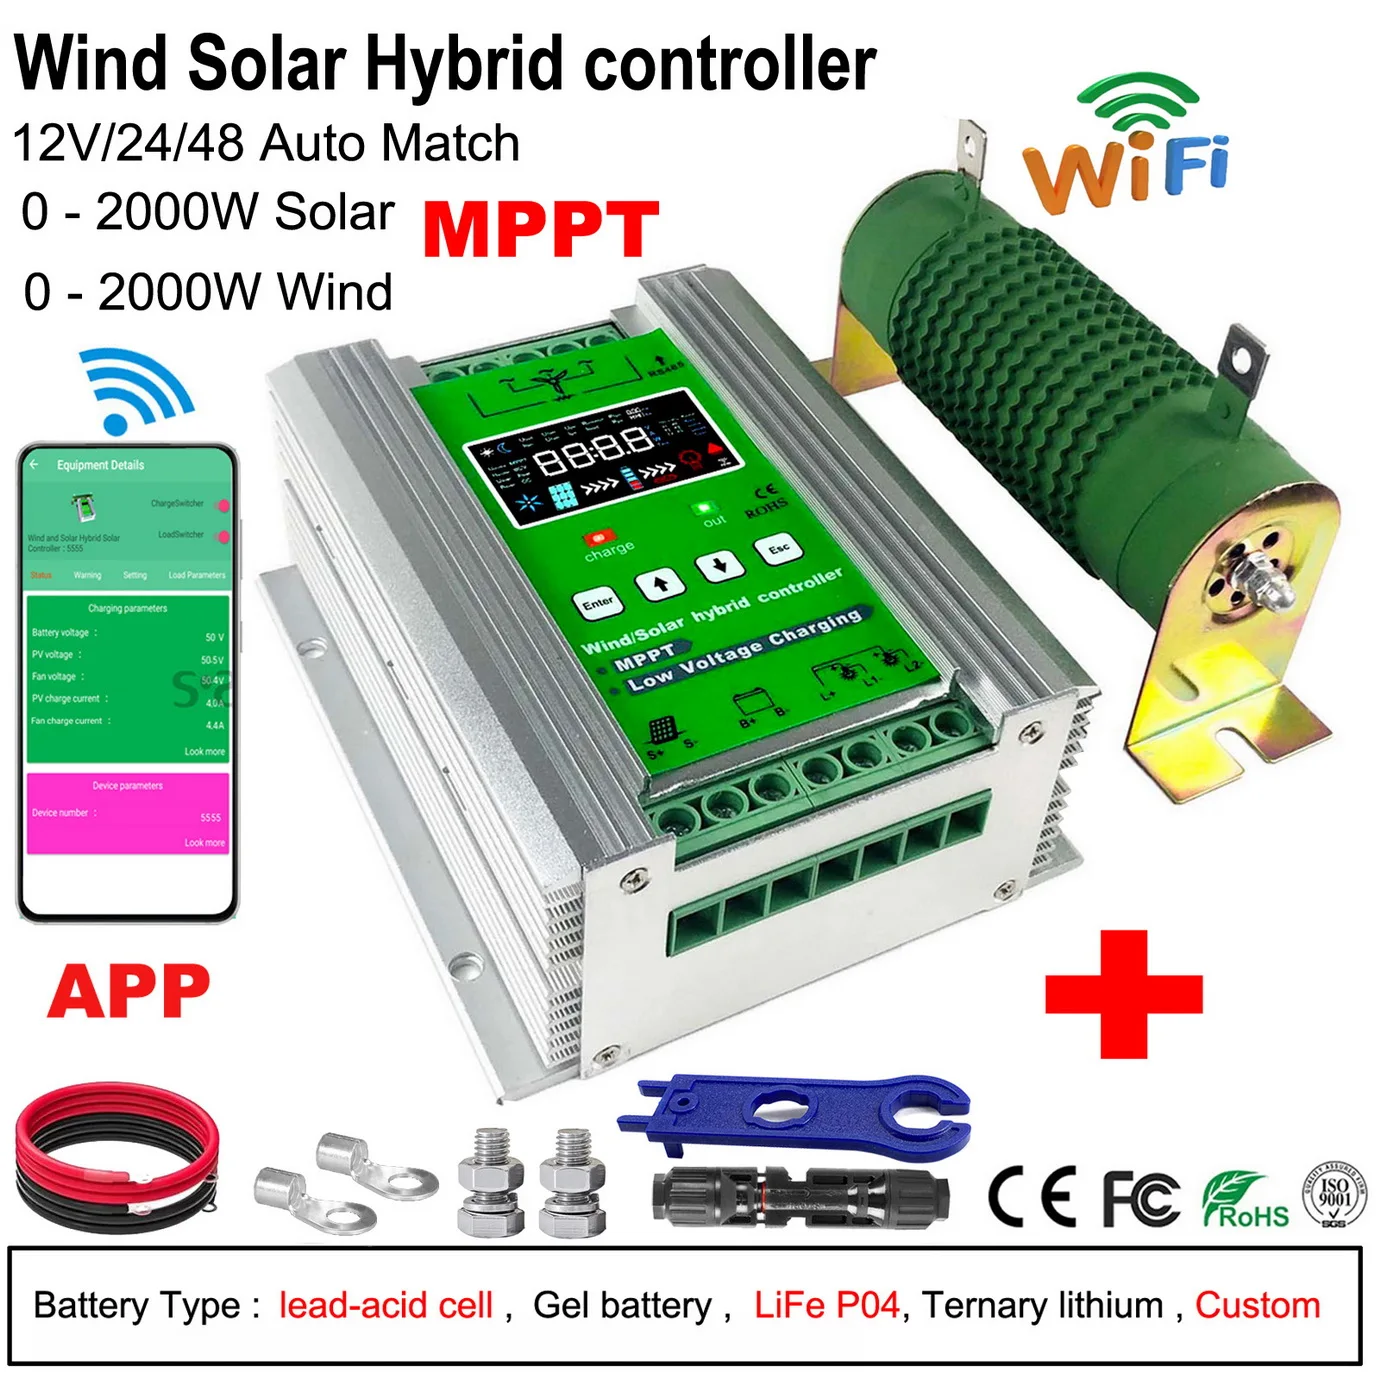 

4000W 3000W 2000W 12V 24V 48V MPPT Wind Solar Hybrid Controller 80A Solar Panel Wind Generator Charger Regulator with Dump Load